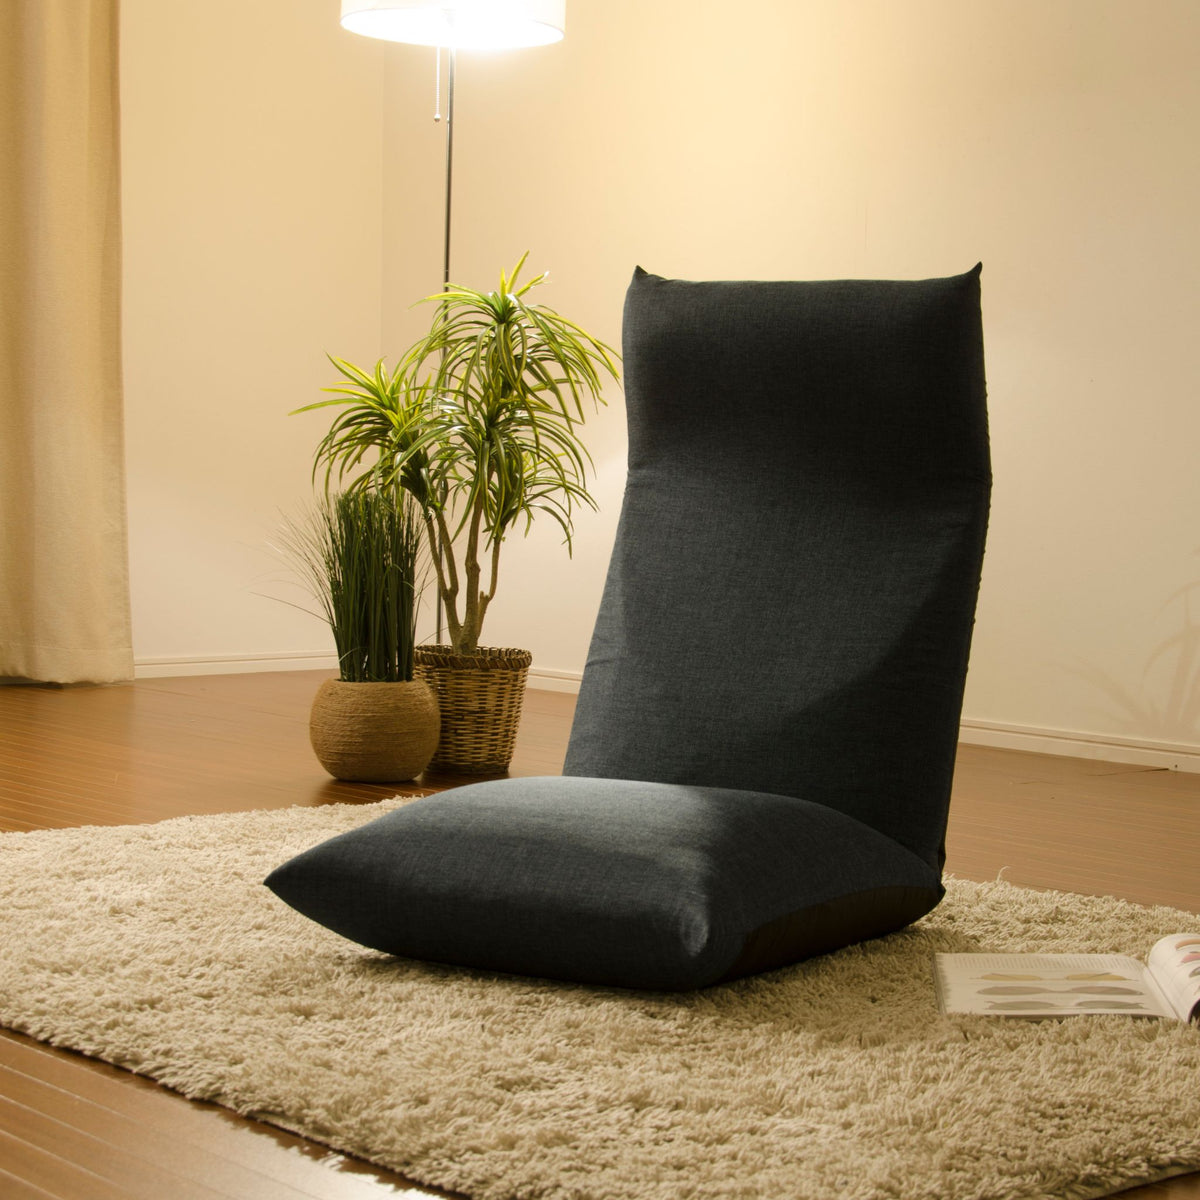 リクライニング座椅子「NECK」 — 【セルタン 公式】日本製ソファ・座椅子のオンライン通販サイト